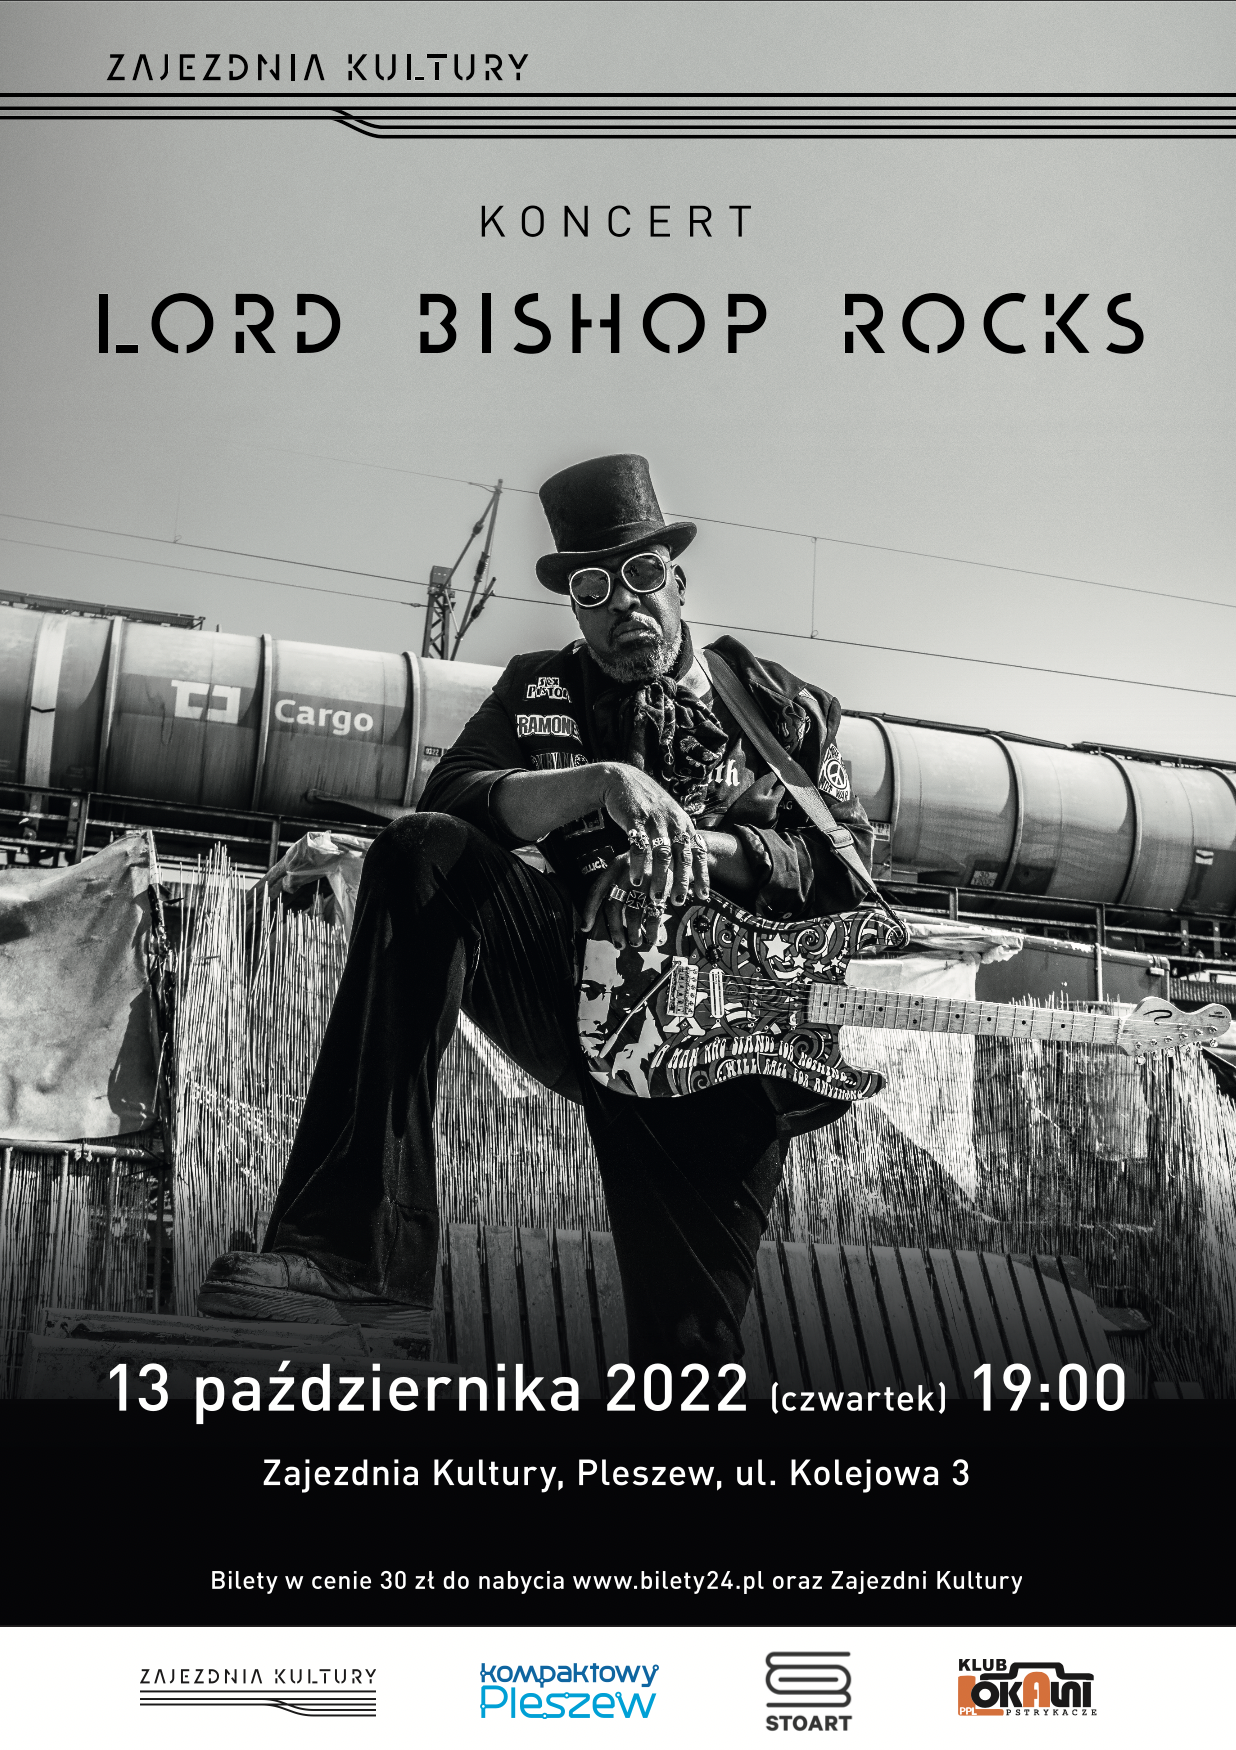 plakat koncertu w Zajezdni Kultury w Pleszewie Lord Bishop Rocks 13 października 2022 o godzinie 19:00